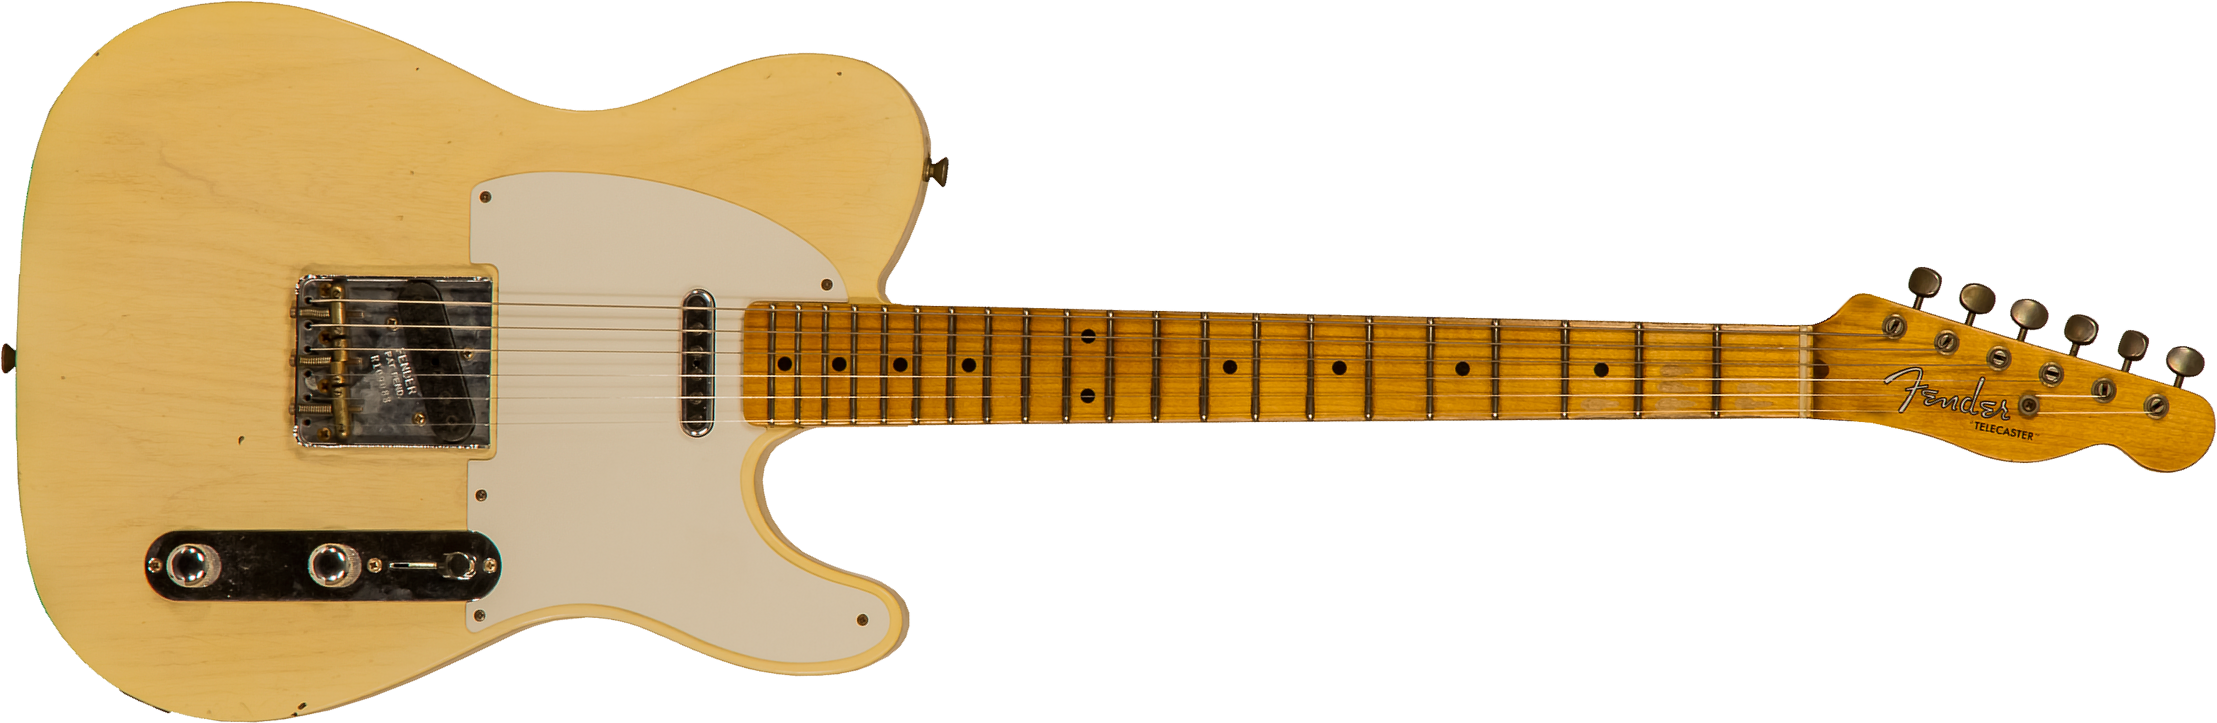 Fender Custom Shop Tele Tomatillo Ltd 2s Ht Mn #r109088 - Journeyman Relic Natural Blonde - Guitare Électrique Forme Tel - Main picture